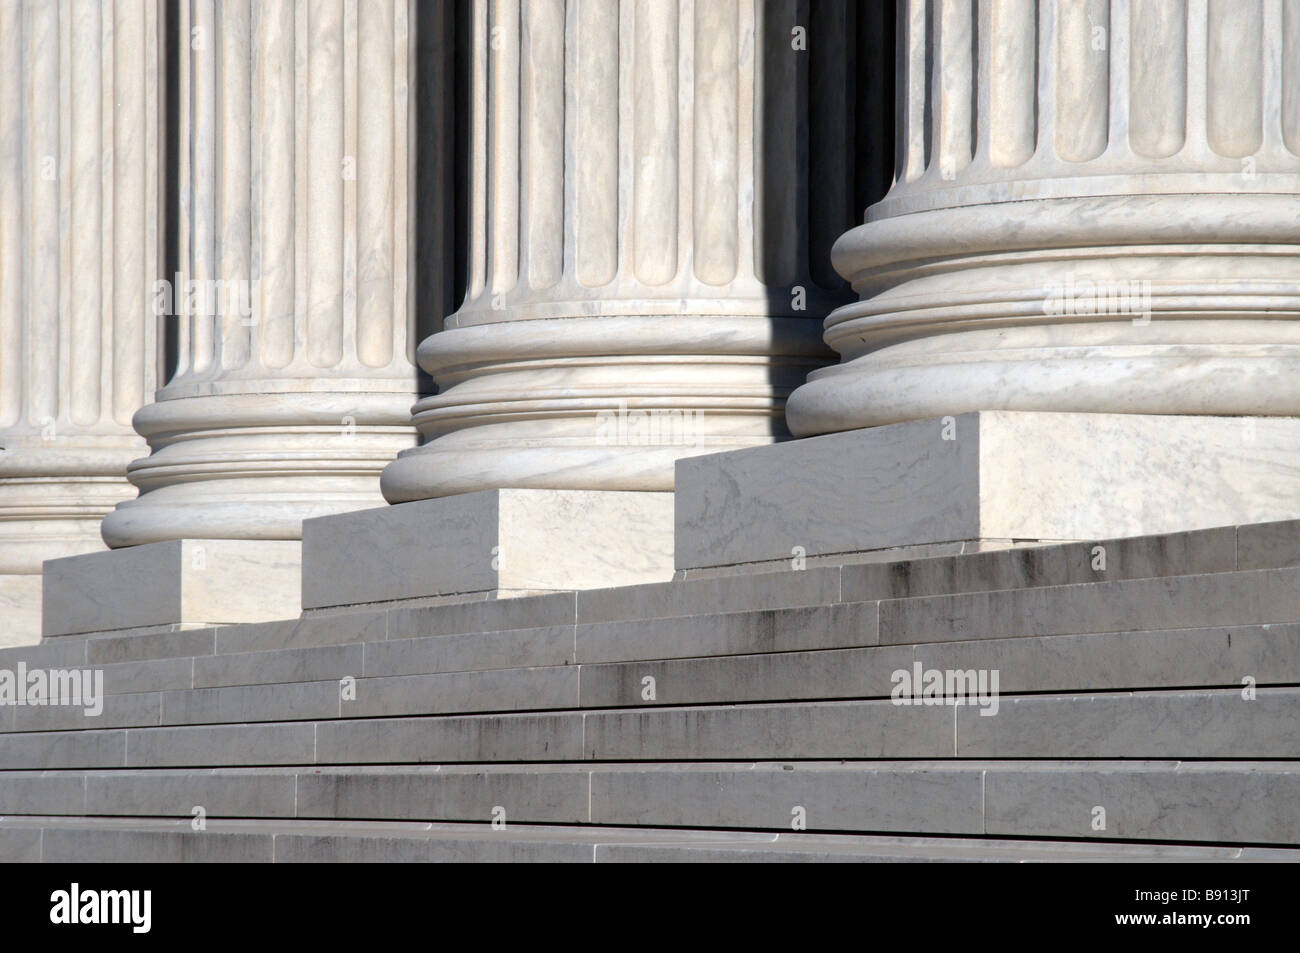 Les escaliers et les colonnes de la Cour suprême des Etats-Unis, Washington DC Banque D'Images